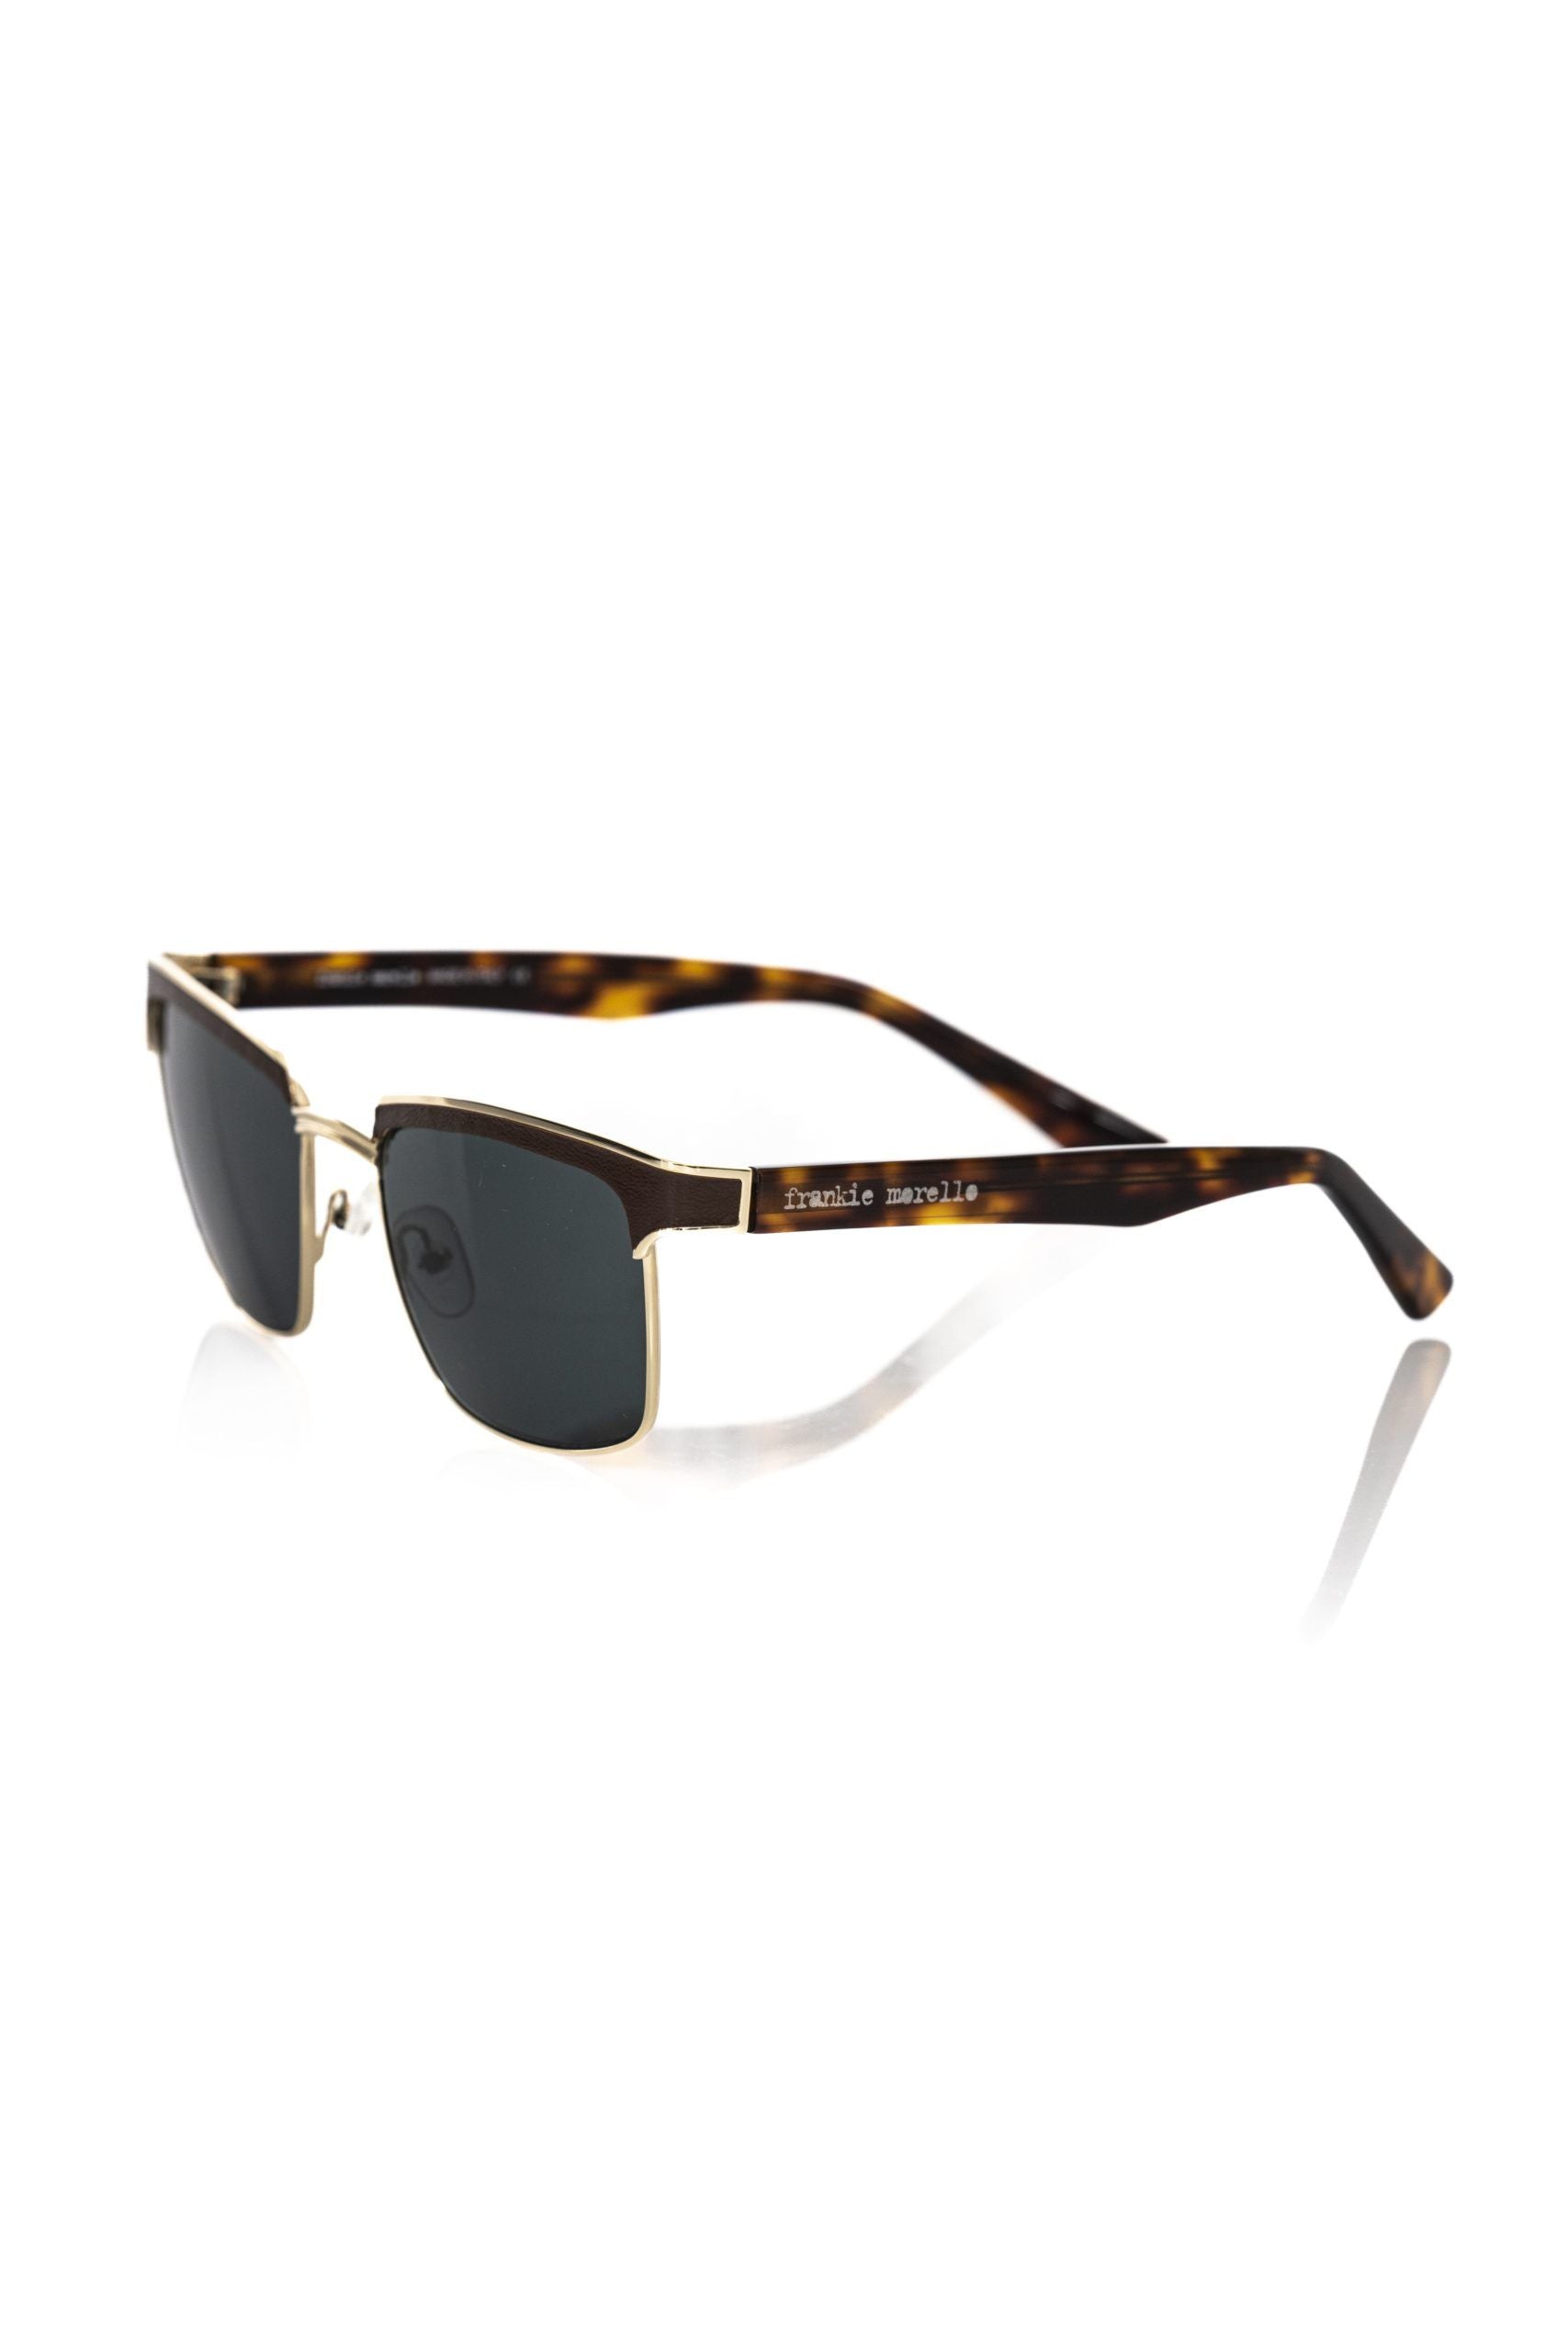 Frankie Morello – Elegante Clubmaster-Sonnenbrille mit getönten Gläsern